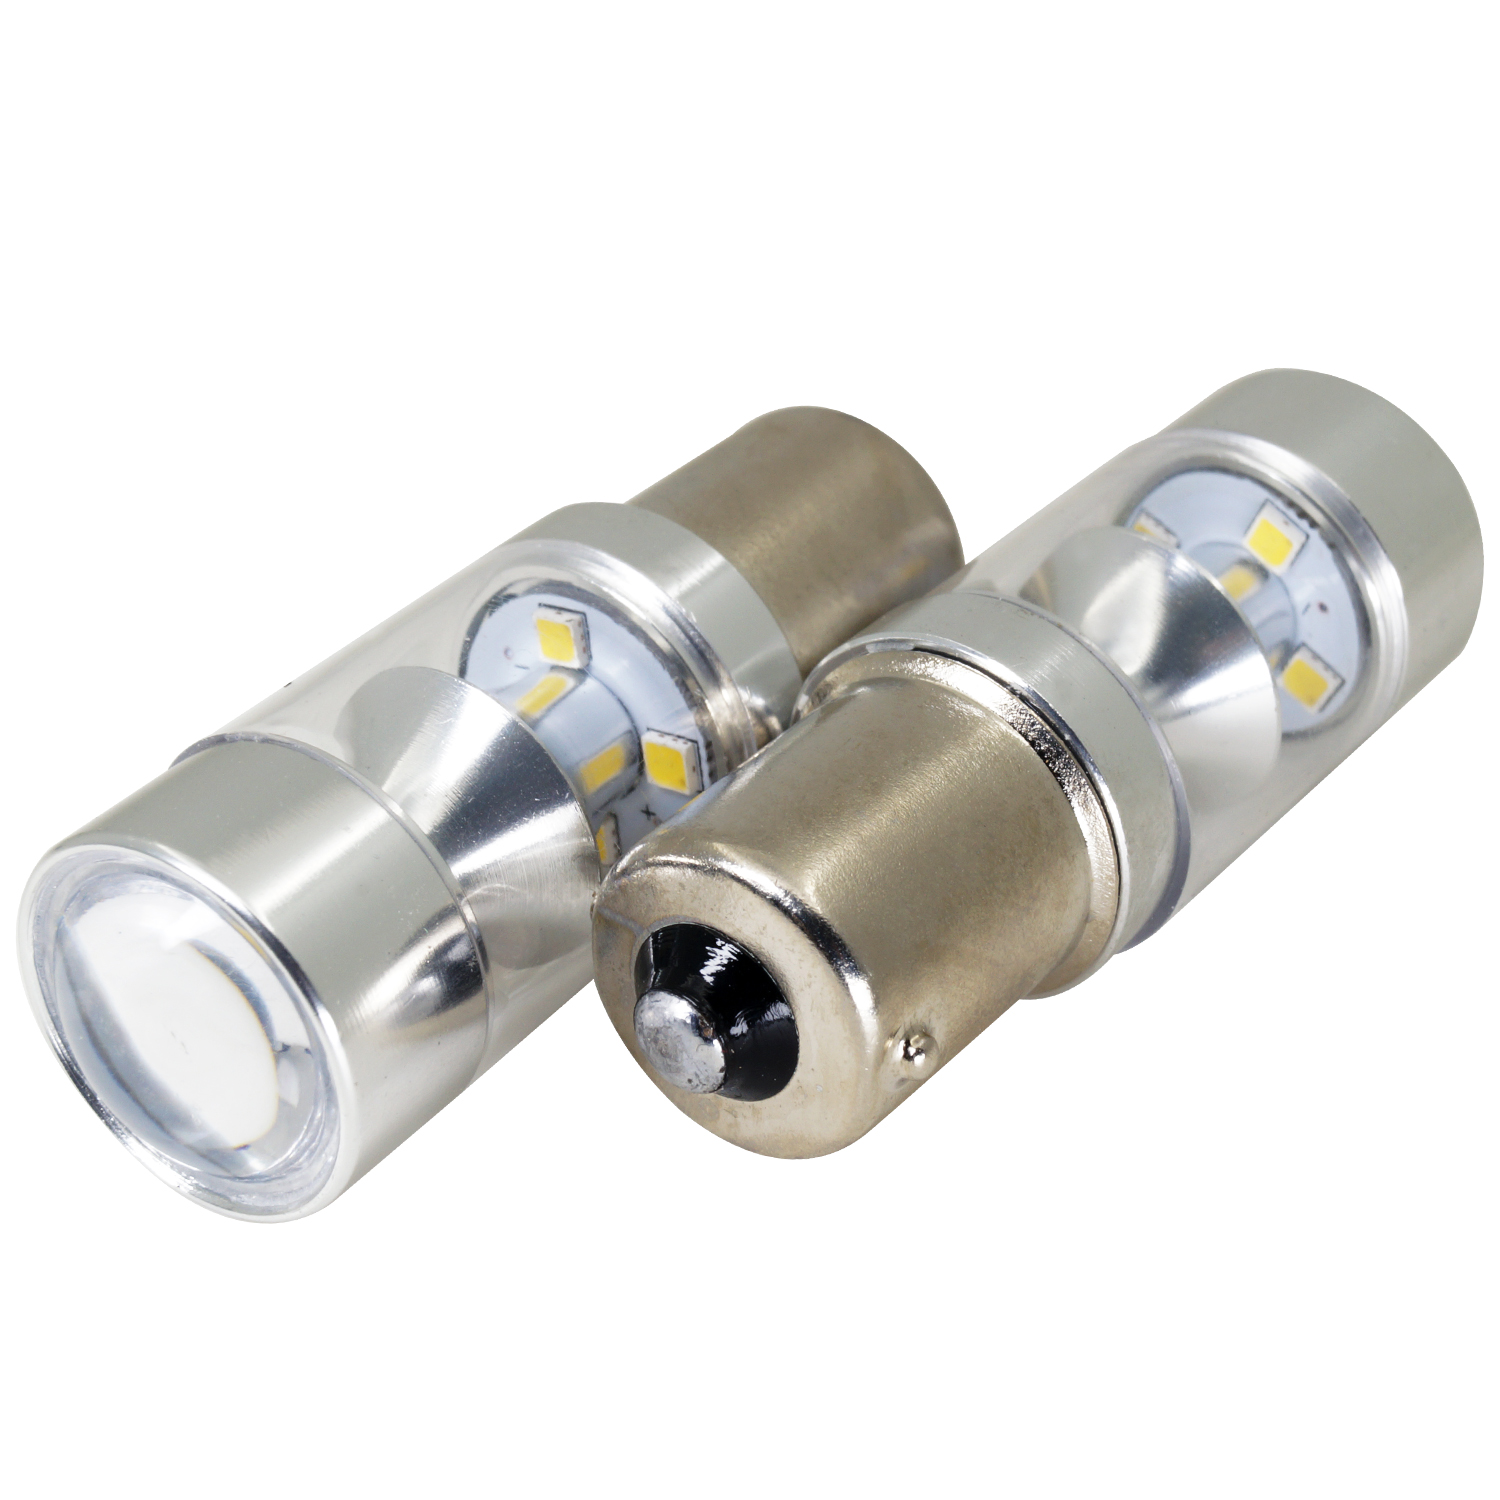 T20 luzes LED de lúmens extremamente brilhantes para lâmpada de sinal de giro